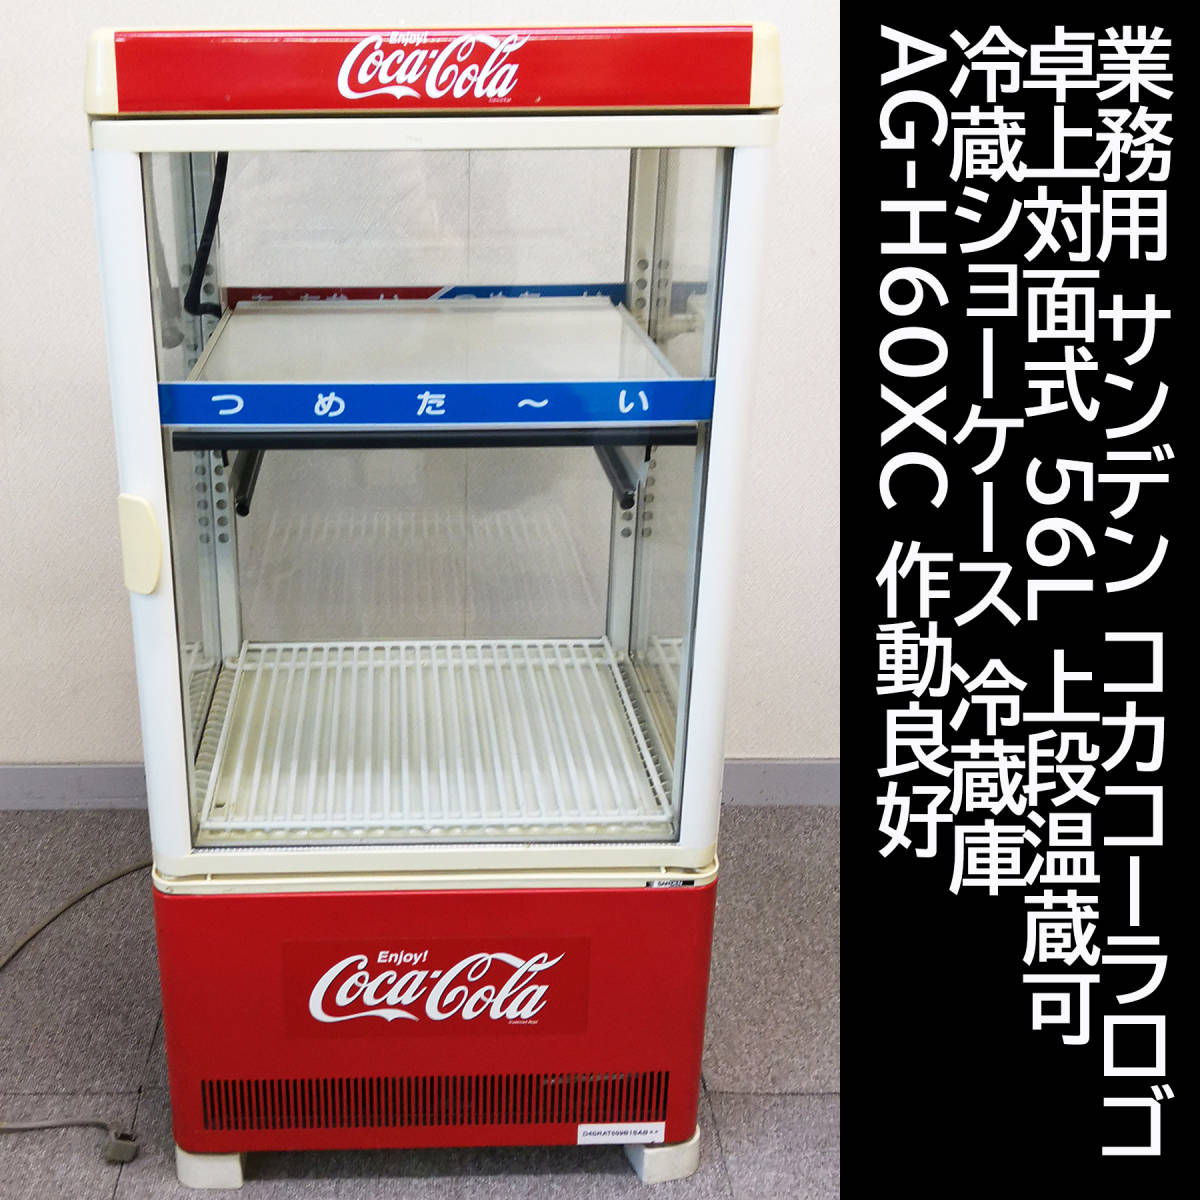 人気商品ランキング 昭和レトロ コカコーラ冷蔵庫 業務用 sushitai.com.mx